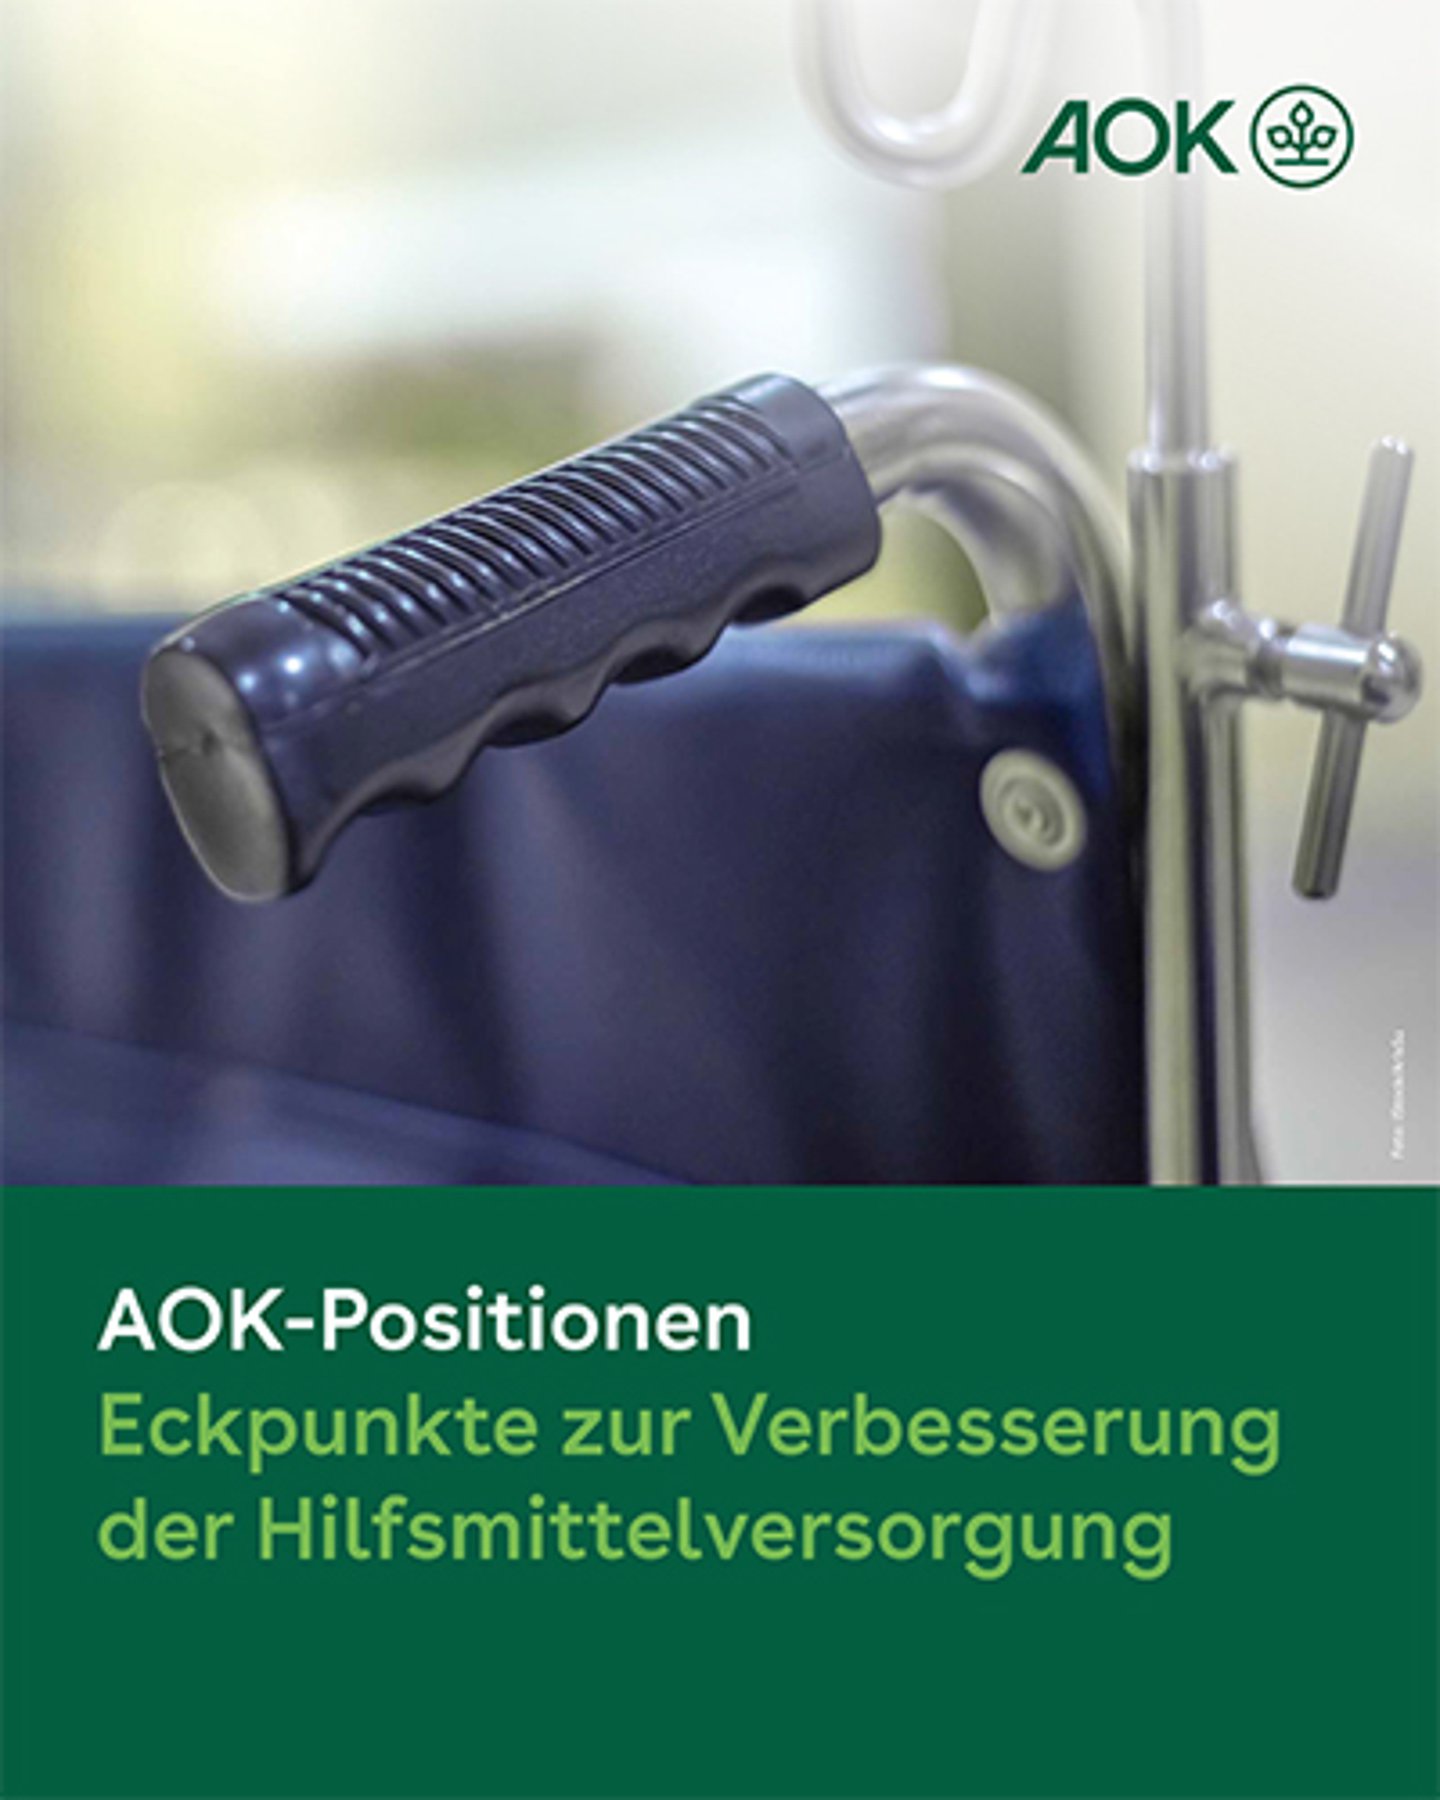 Deckblatt des AOK-Positionspapier zur Hilfsmittelversorgung